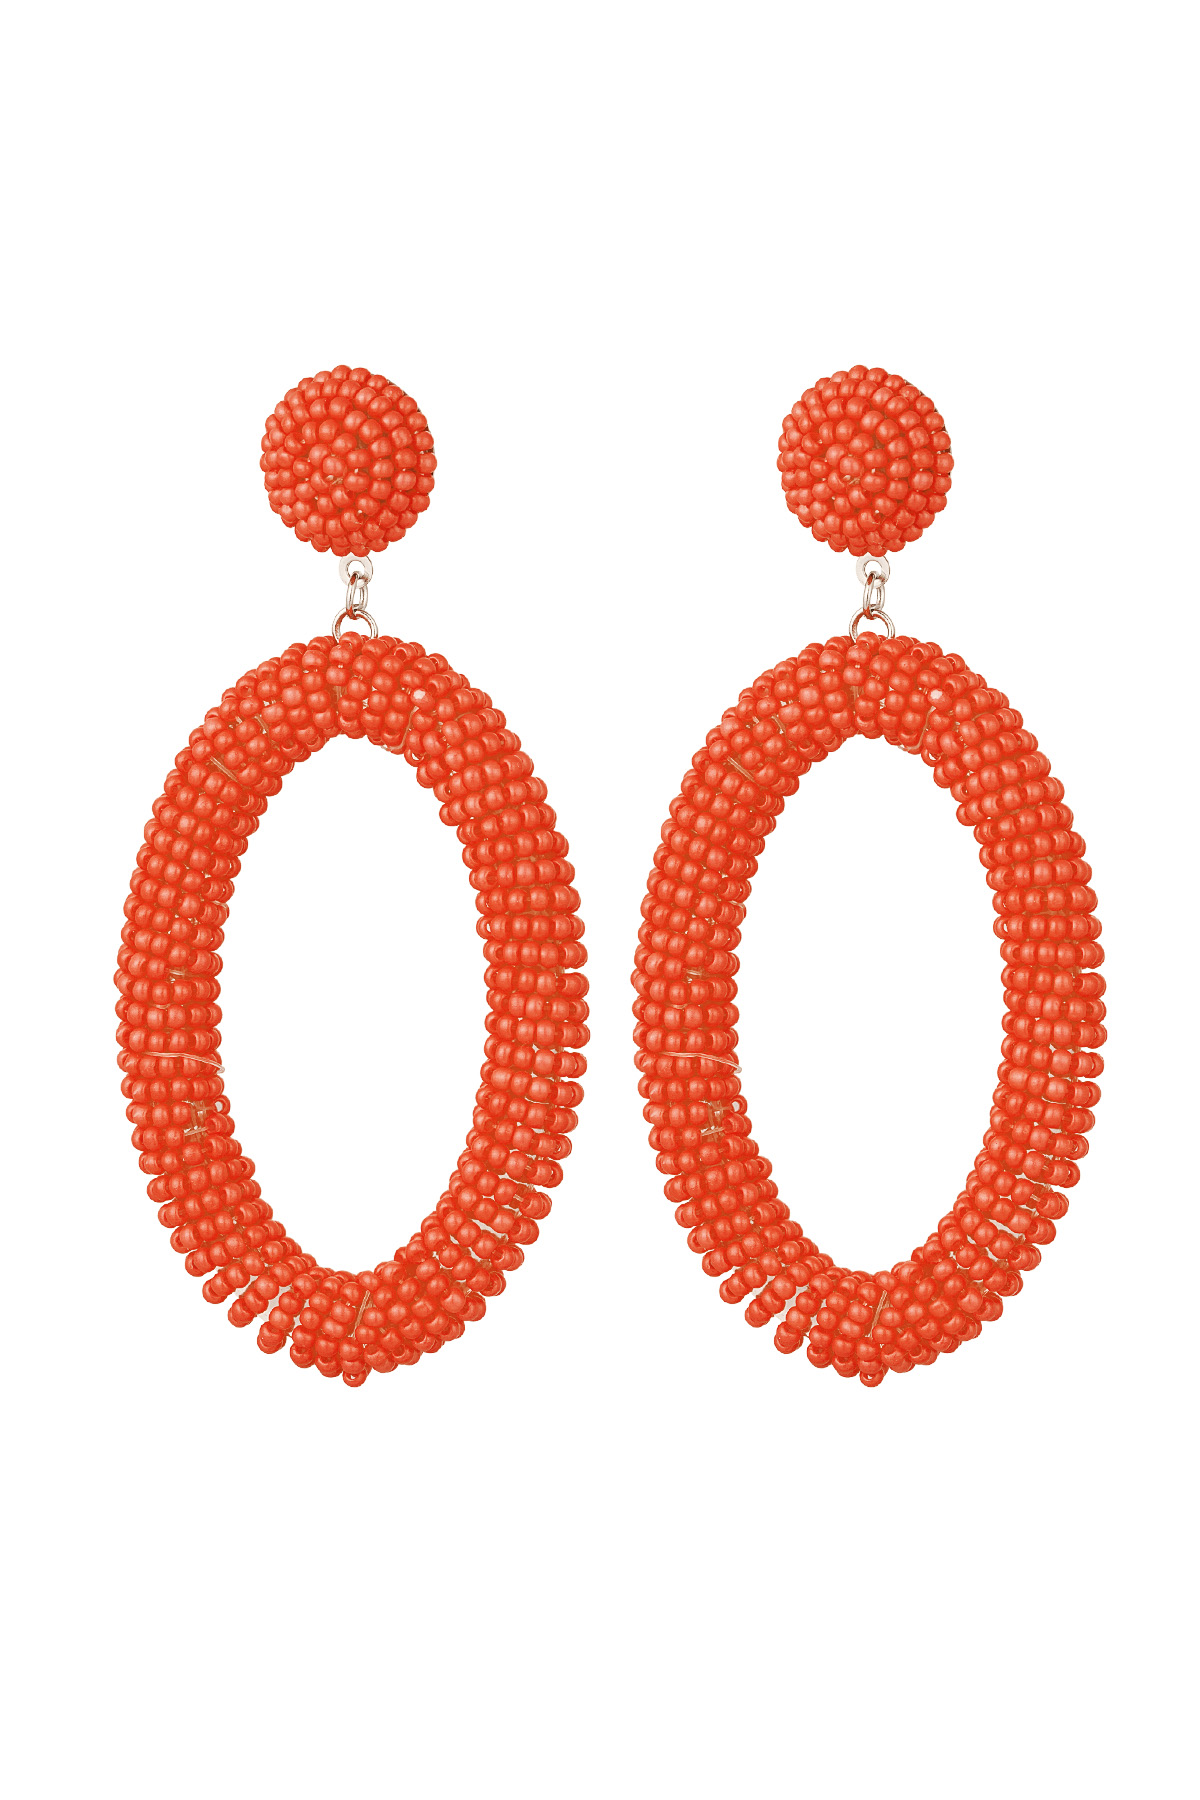 Boucles d'Oreilles Perles Bonbons Allongées - Orange Acier Inoxydable h5 